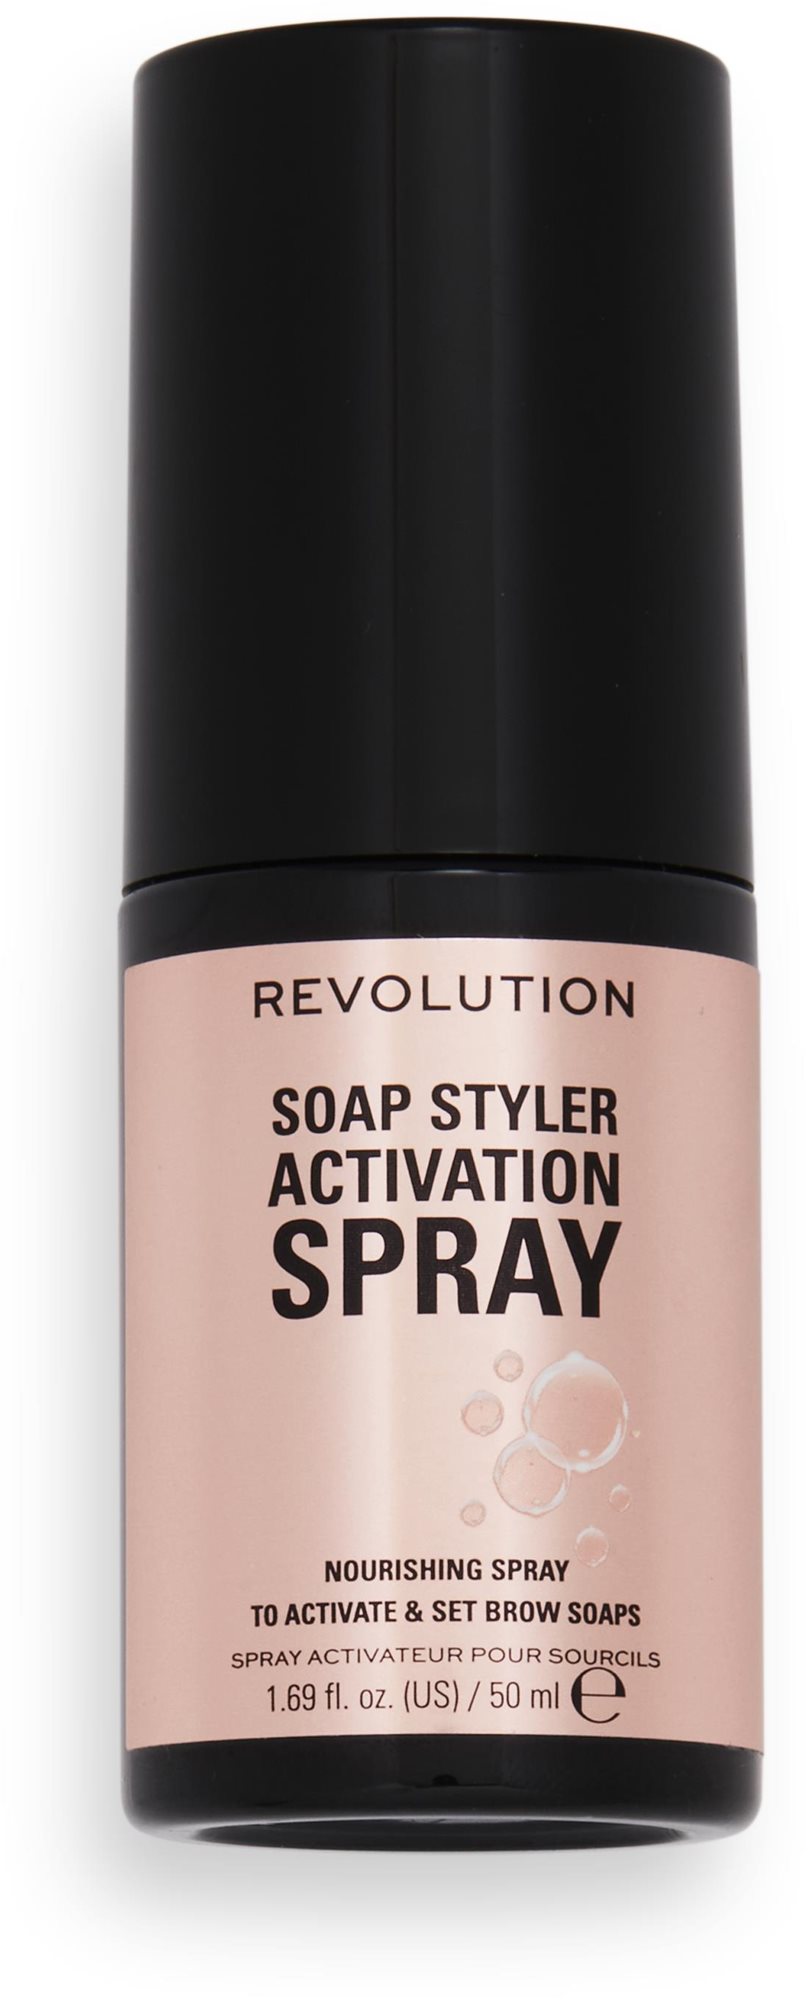 Fixáló REVOLUTION Soap Styler Activation Spray